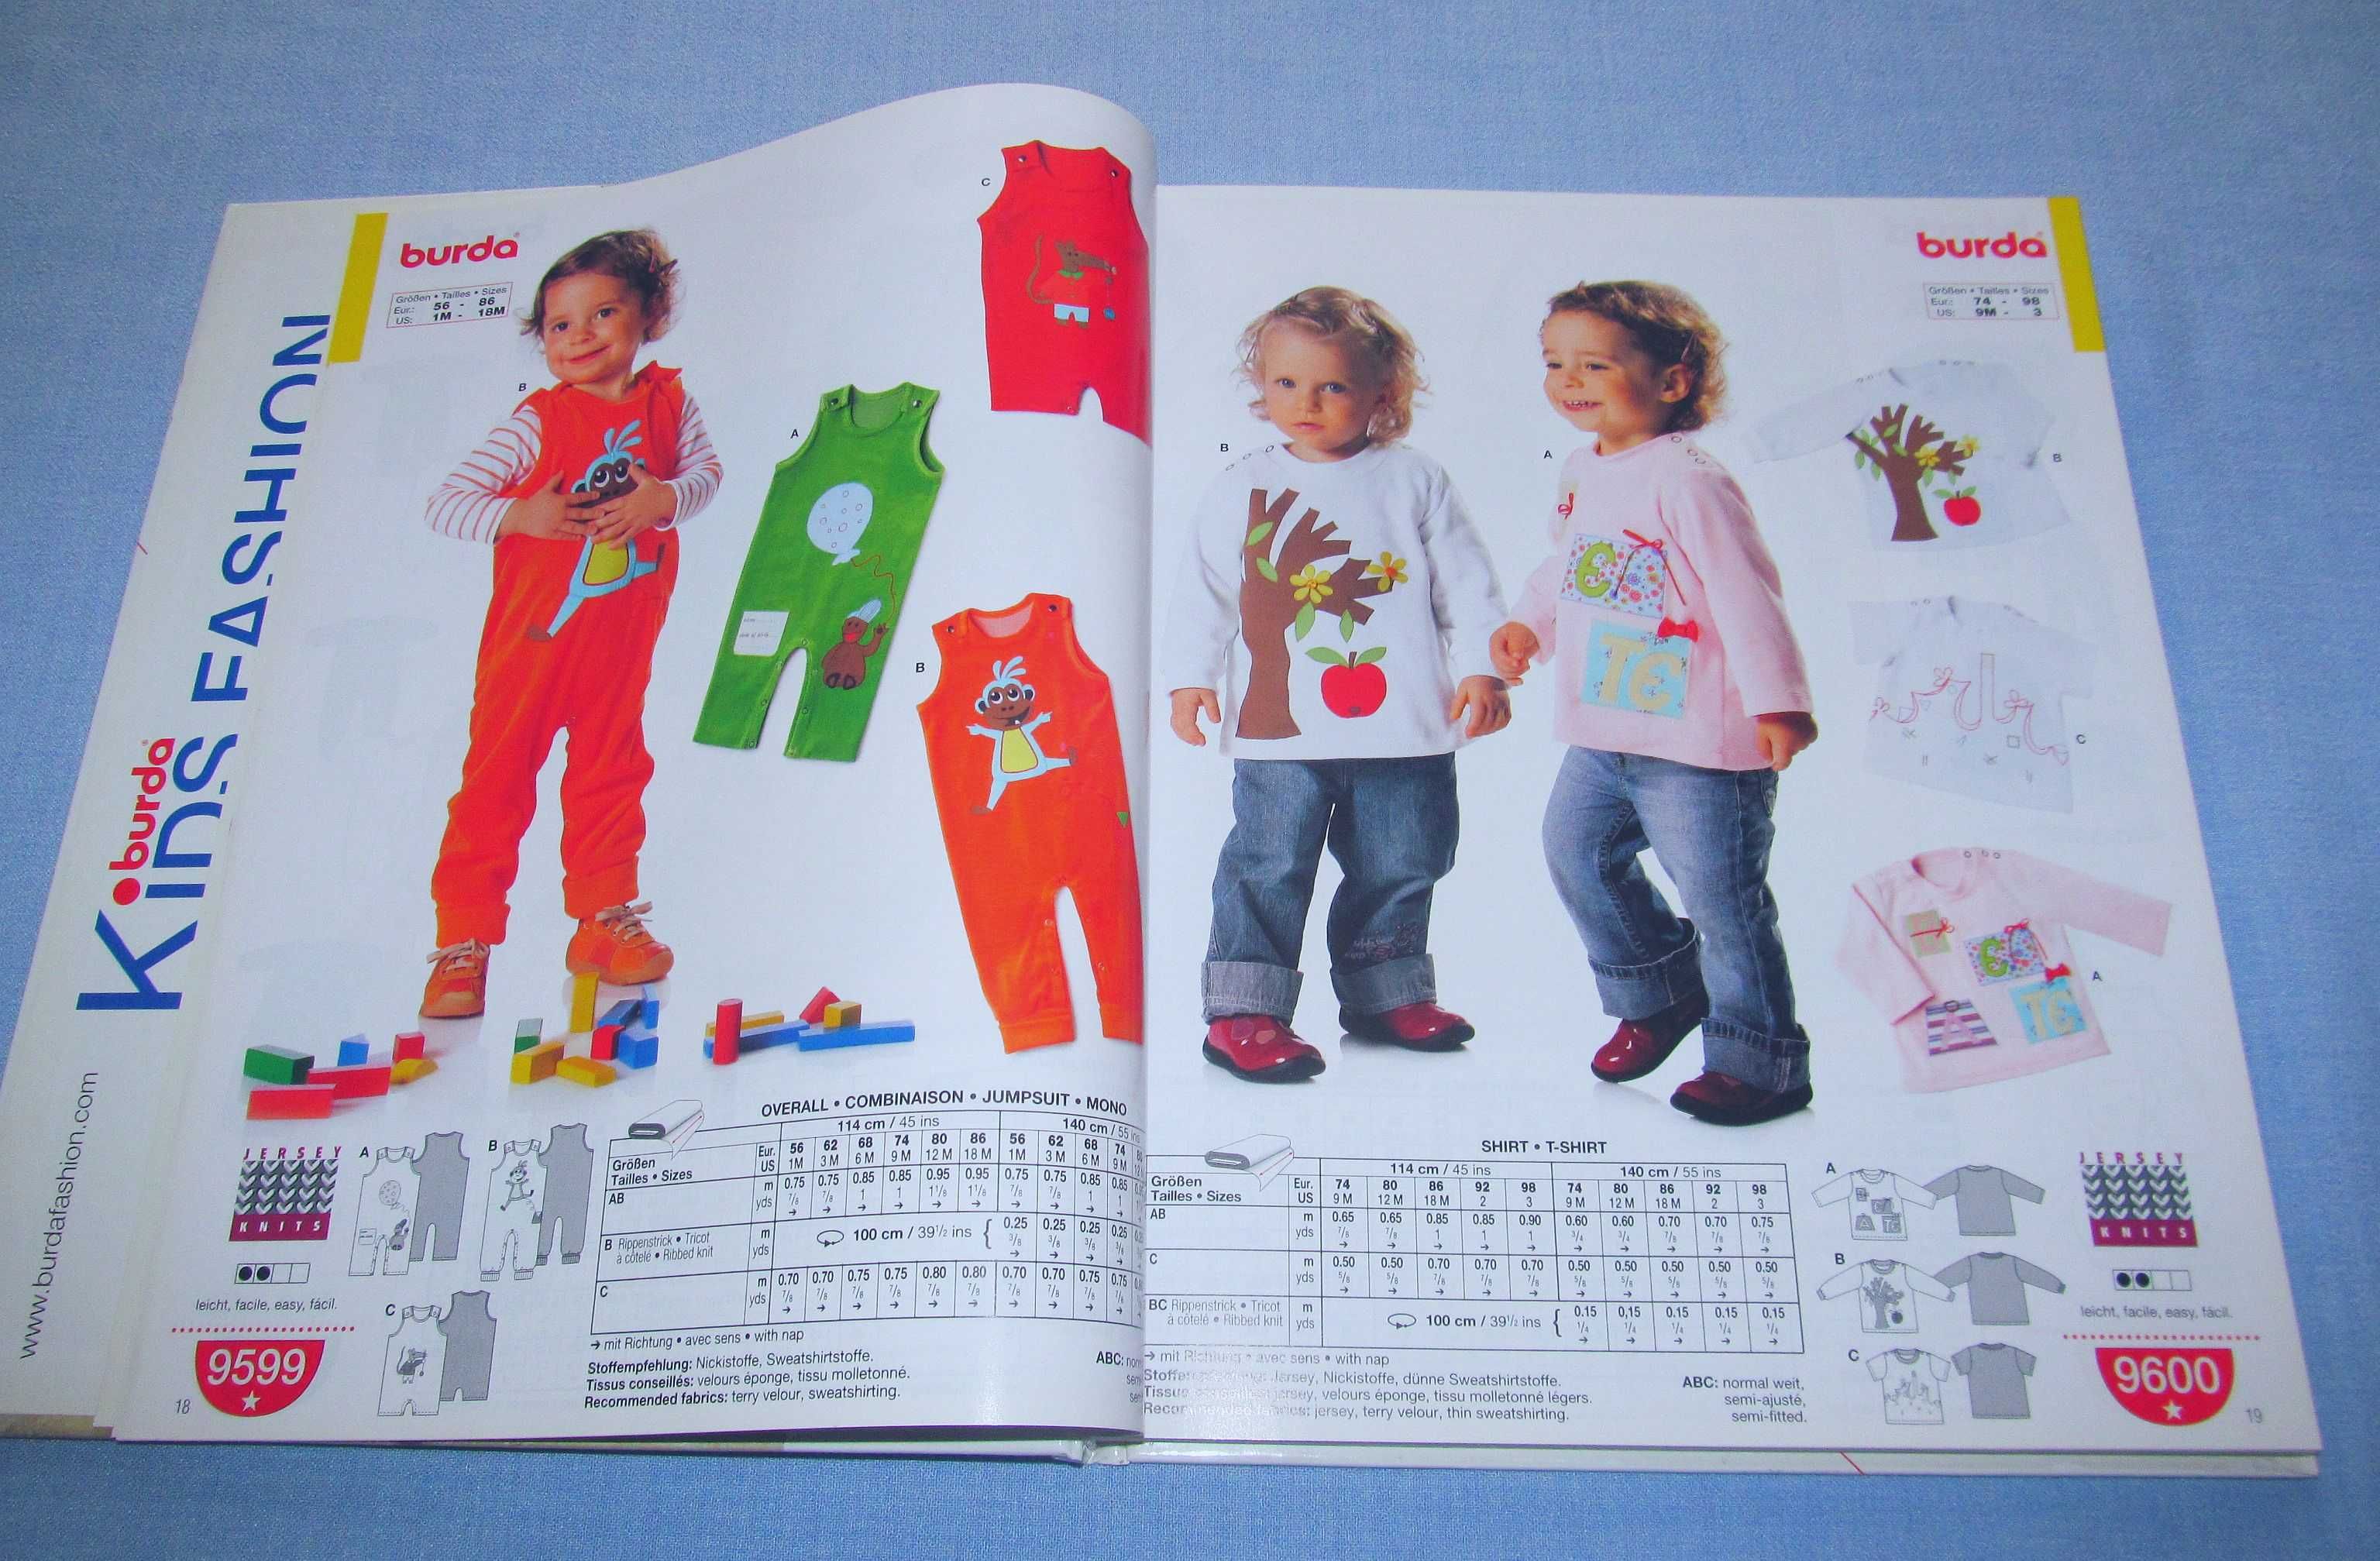 Burda Kisd Fashion jesień/zima 2008/09 Katalog mody dziecięcej